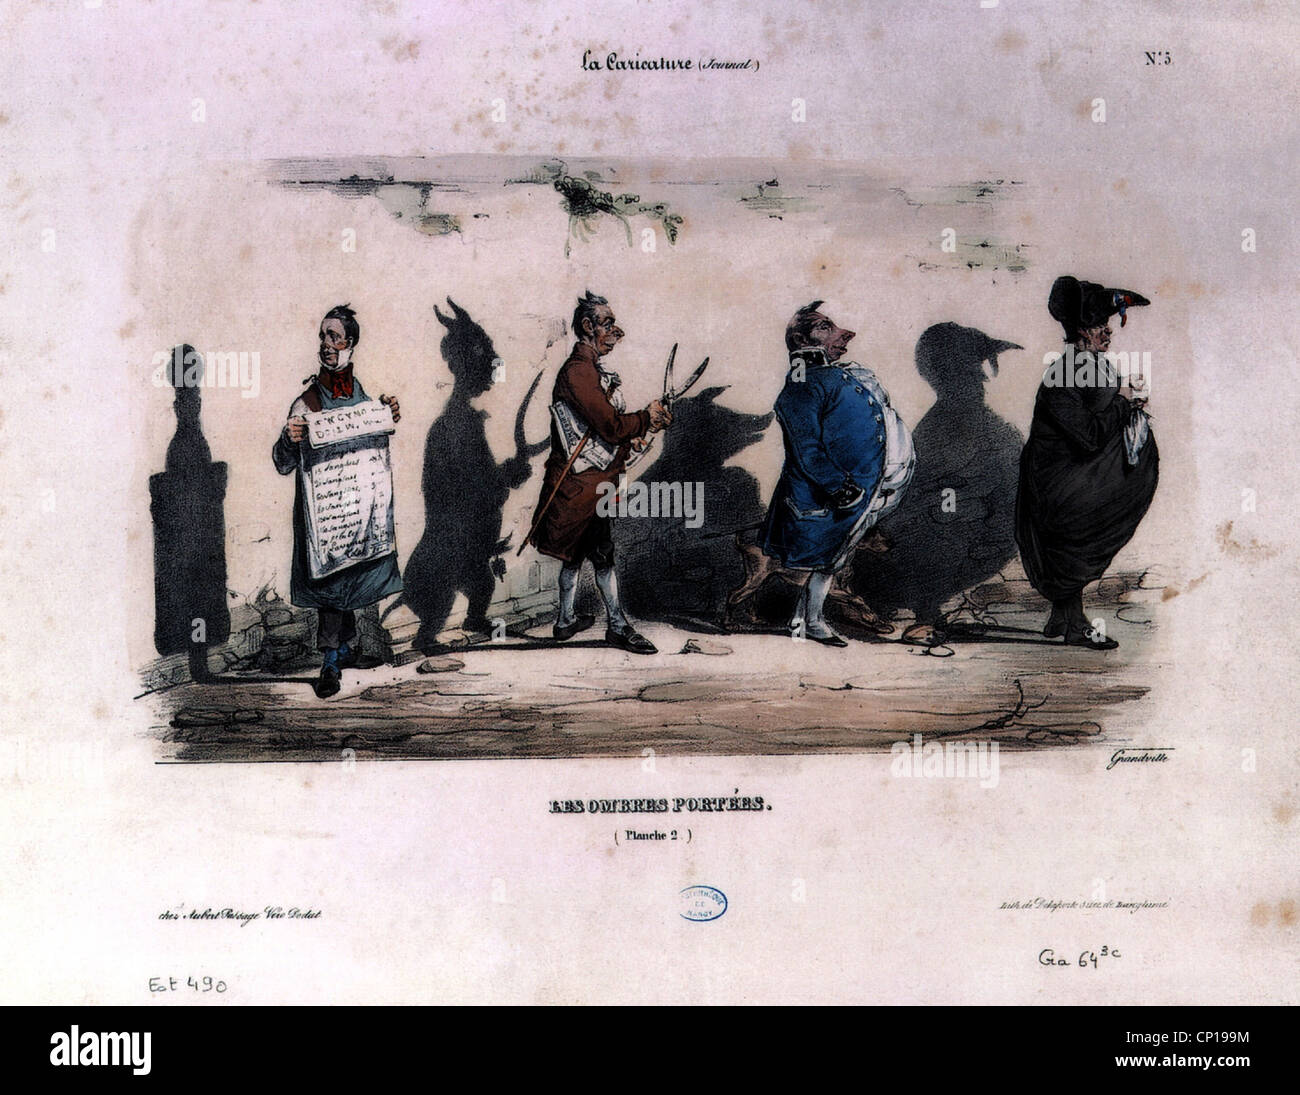 Géographie / voyages, France, politique, la caricature , 2e feuille, 'Les ombres portees' (ombre portée), dessin de J. J. Grandville, 1830, , n'a pas d'auteur de l'artiste pour être effacé Banque D'Images